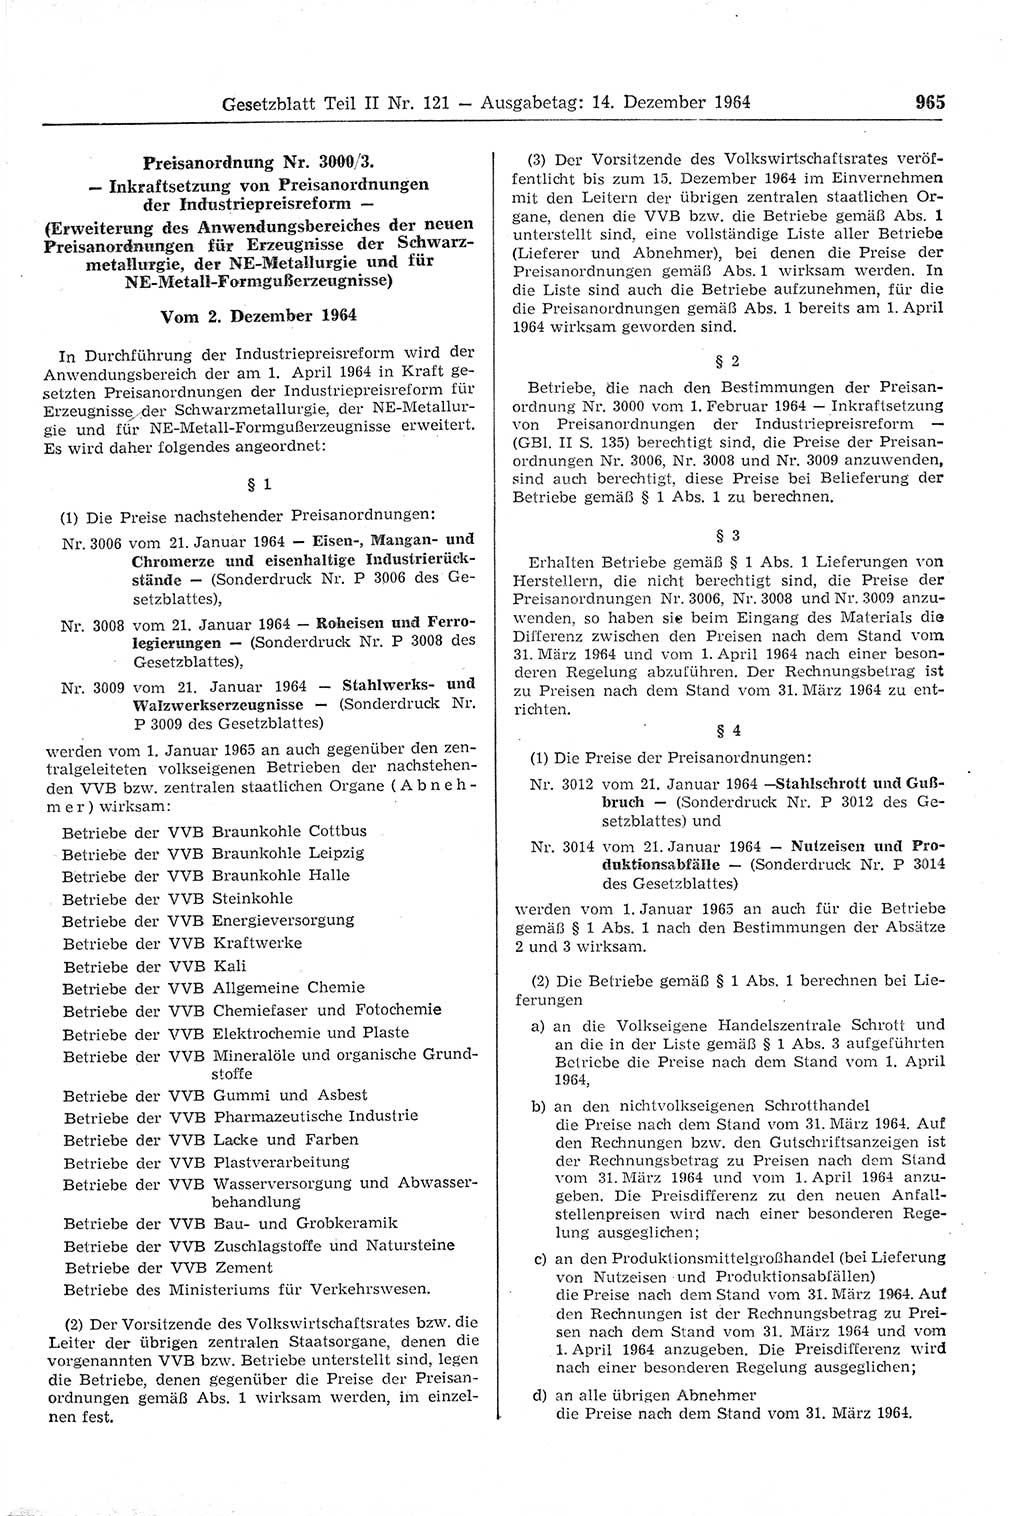 Gesetzblatt (GBl.) der Deutschen Demokratischen Republik (DDR) Teil ⅠⅠ 1964, Seite 965 (GBl. DDR ⅠⅠ 1964, S. 965)